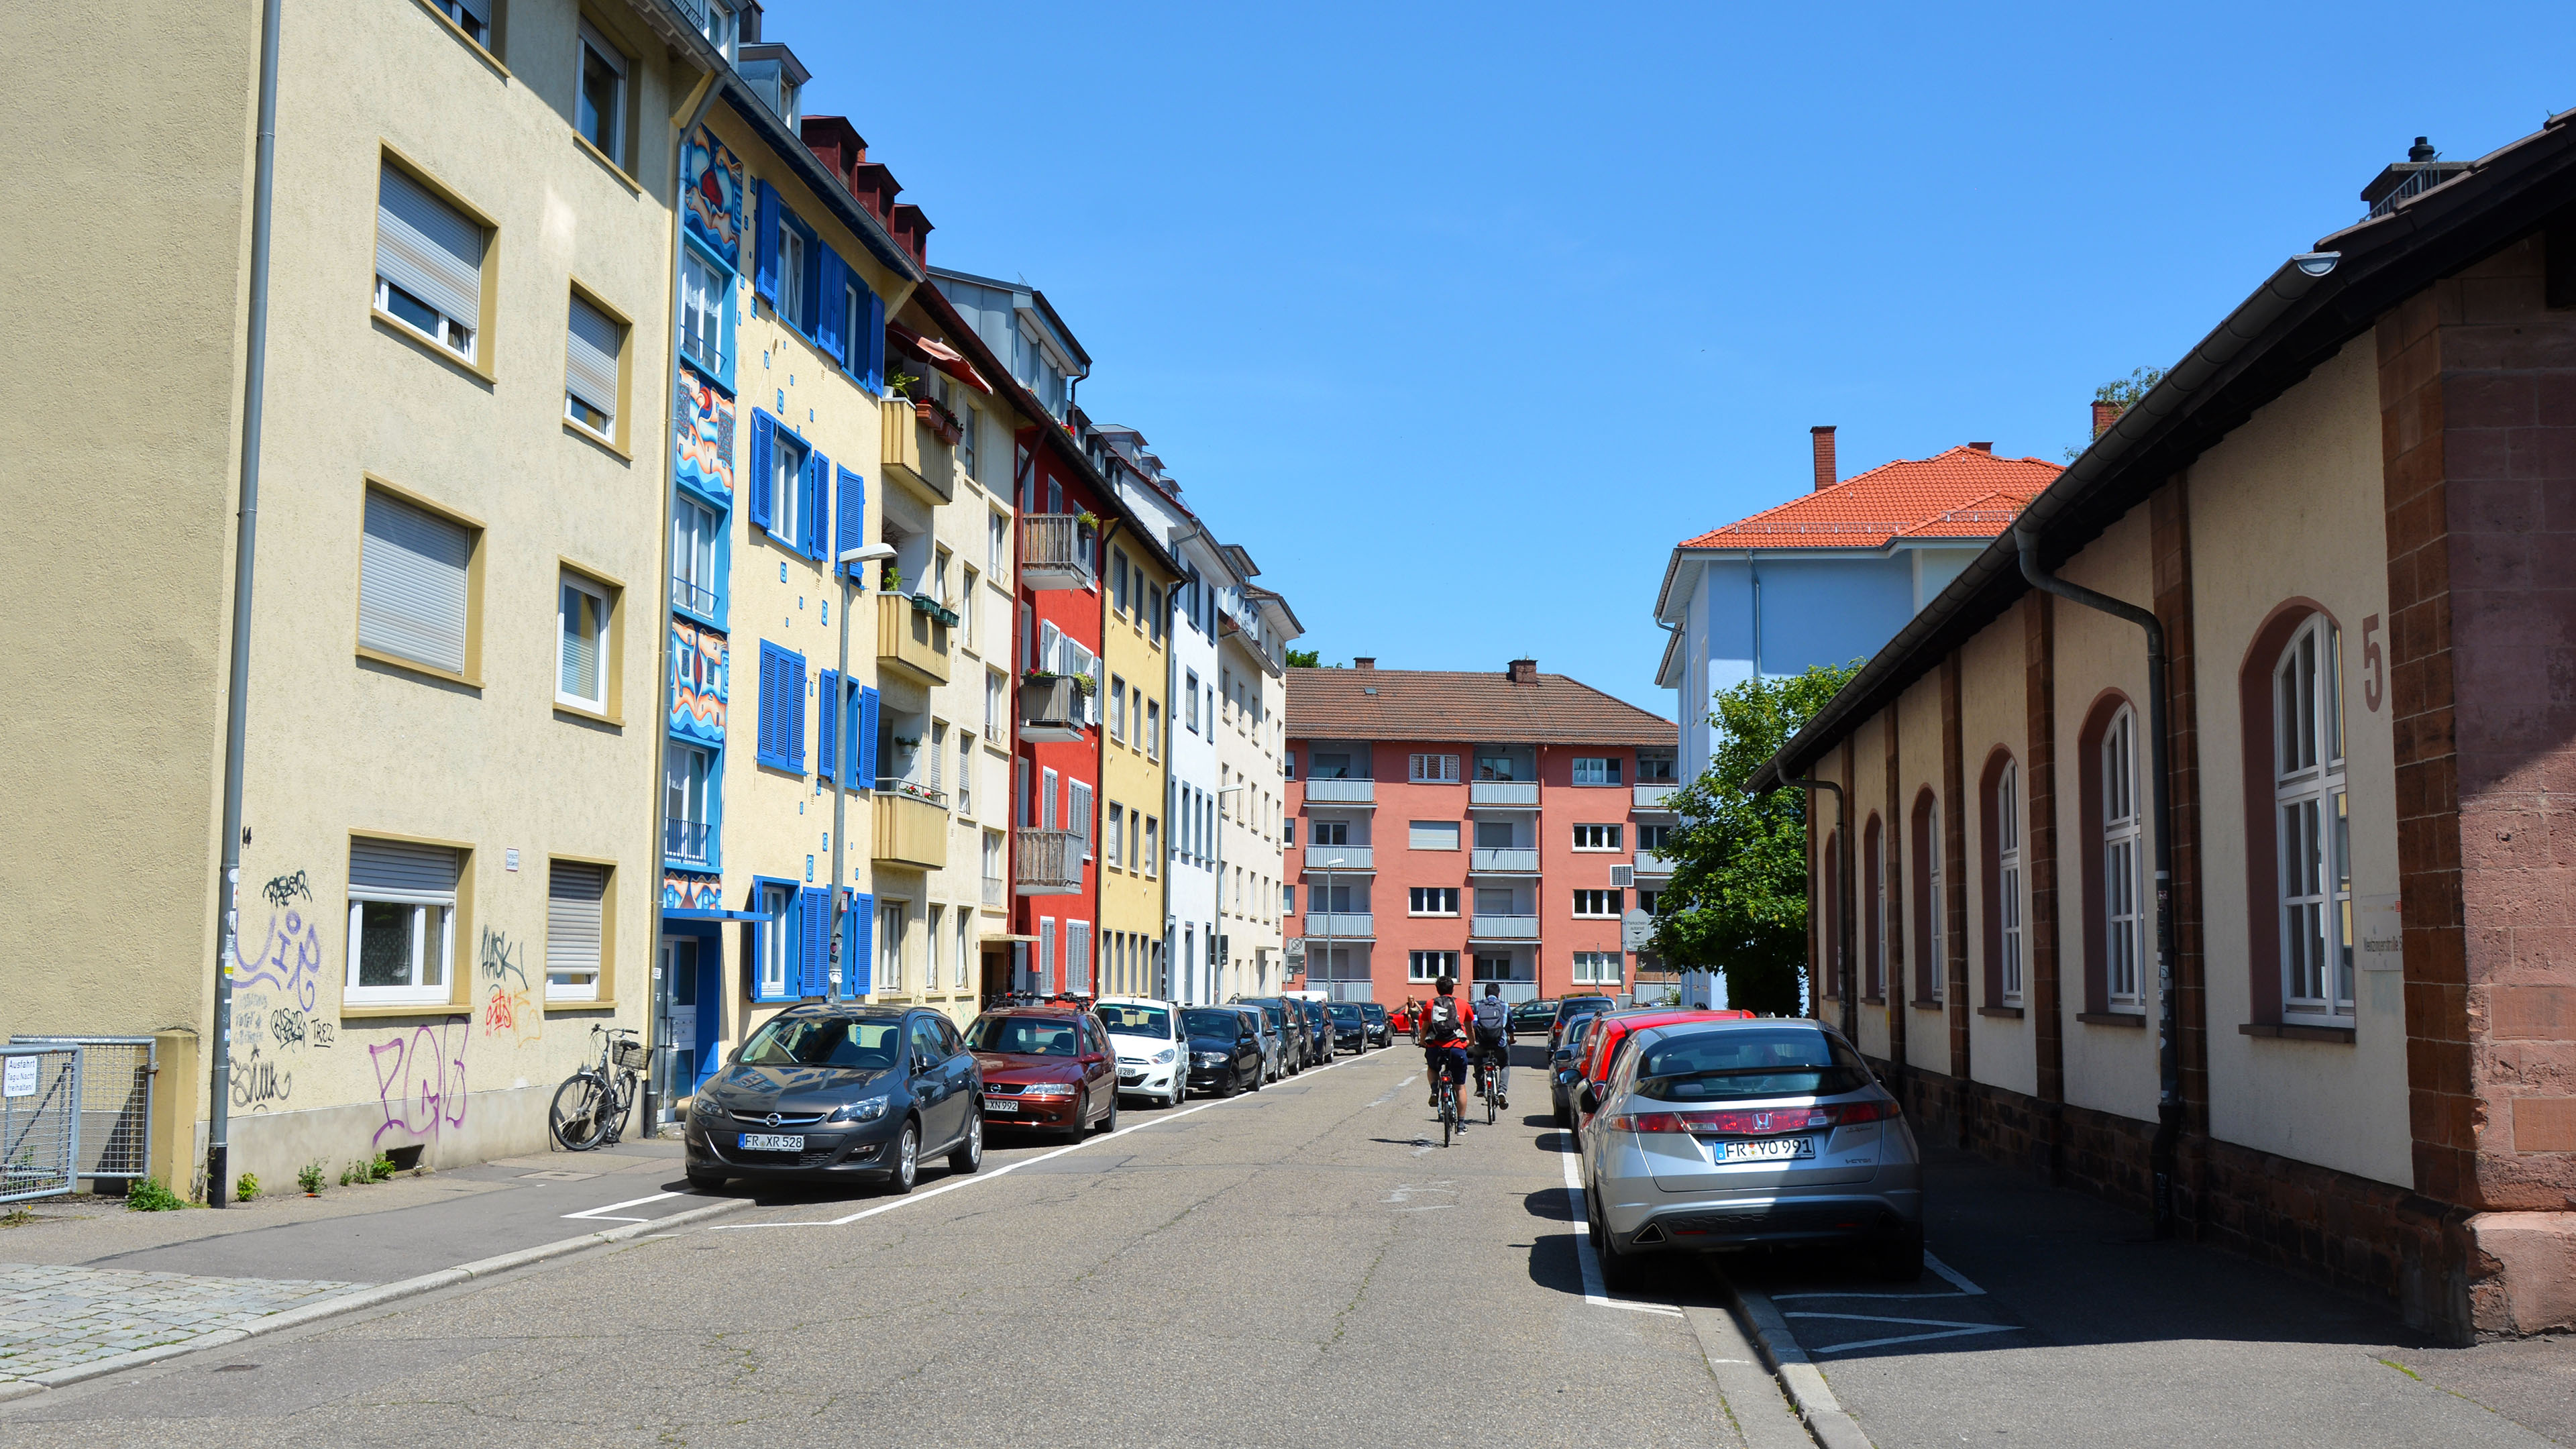 A residential area near Bahnhof